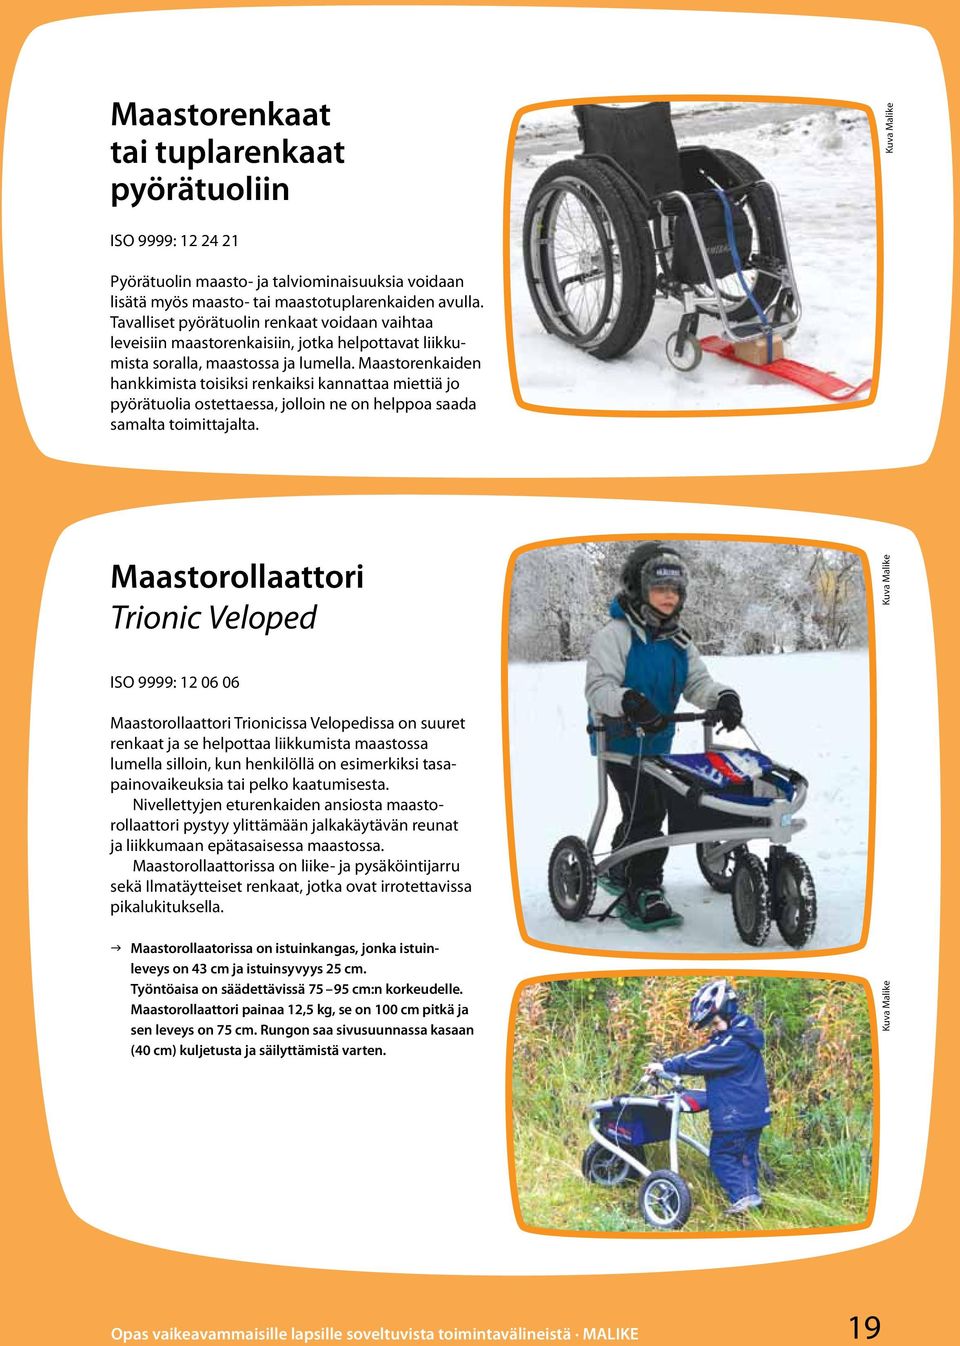 Maastorenkaiden hankkimista toisiksi renkaiksi kannattaa miettiä jo pyörätuolia ostettaessa, jolloin ne on helppoa saada samalta toimittajalta.